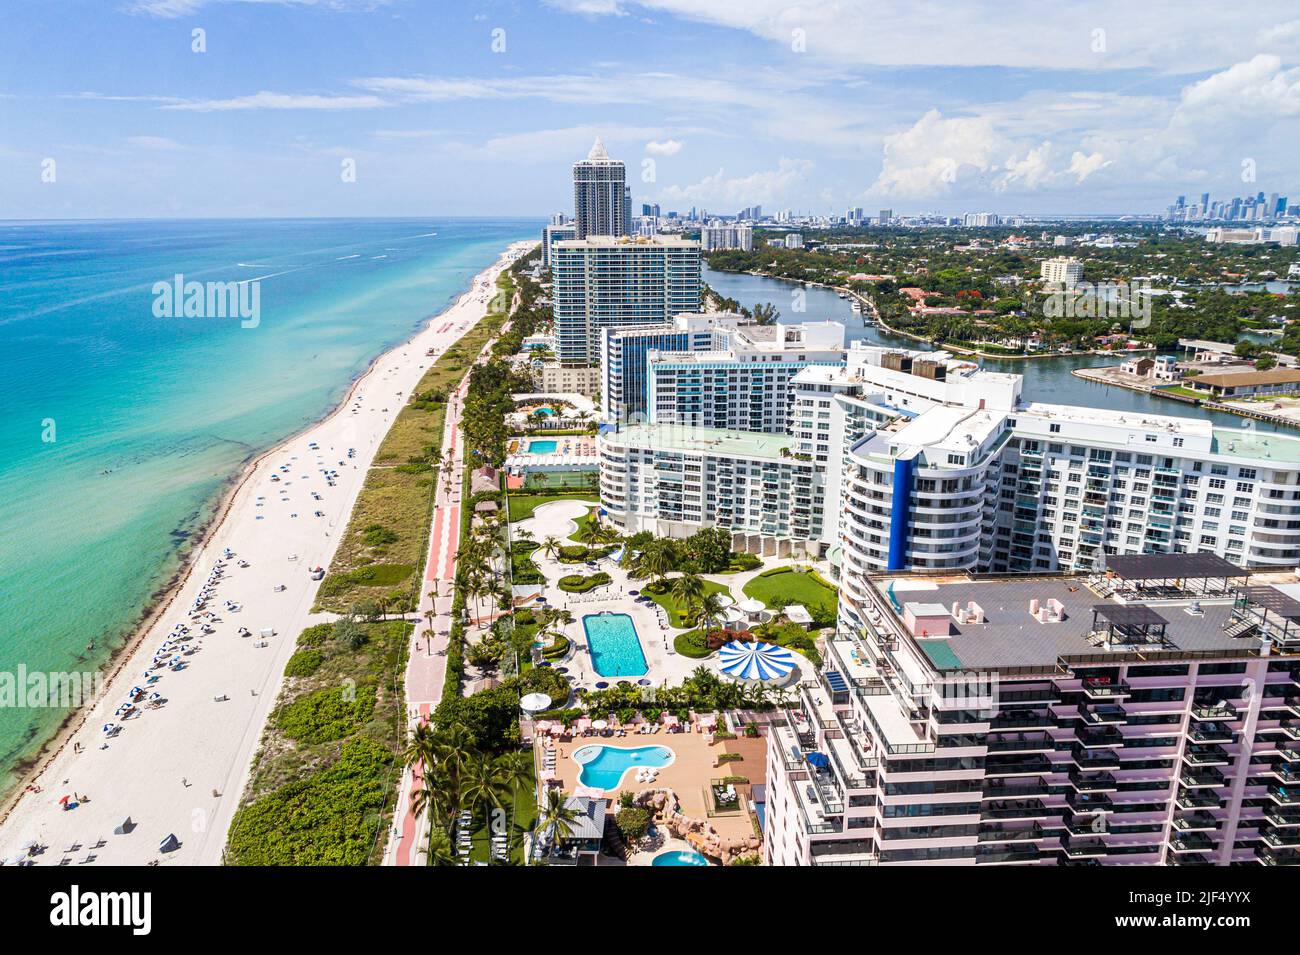 Miami Beach Florida, Luftaufnahme von oben, das Alexander Oceanfront Resort Seacoast 5151 Wohnanlage Komplex, Atlantikküste Küste p Stockfoto